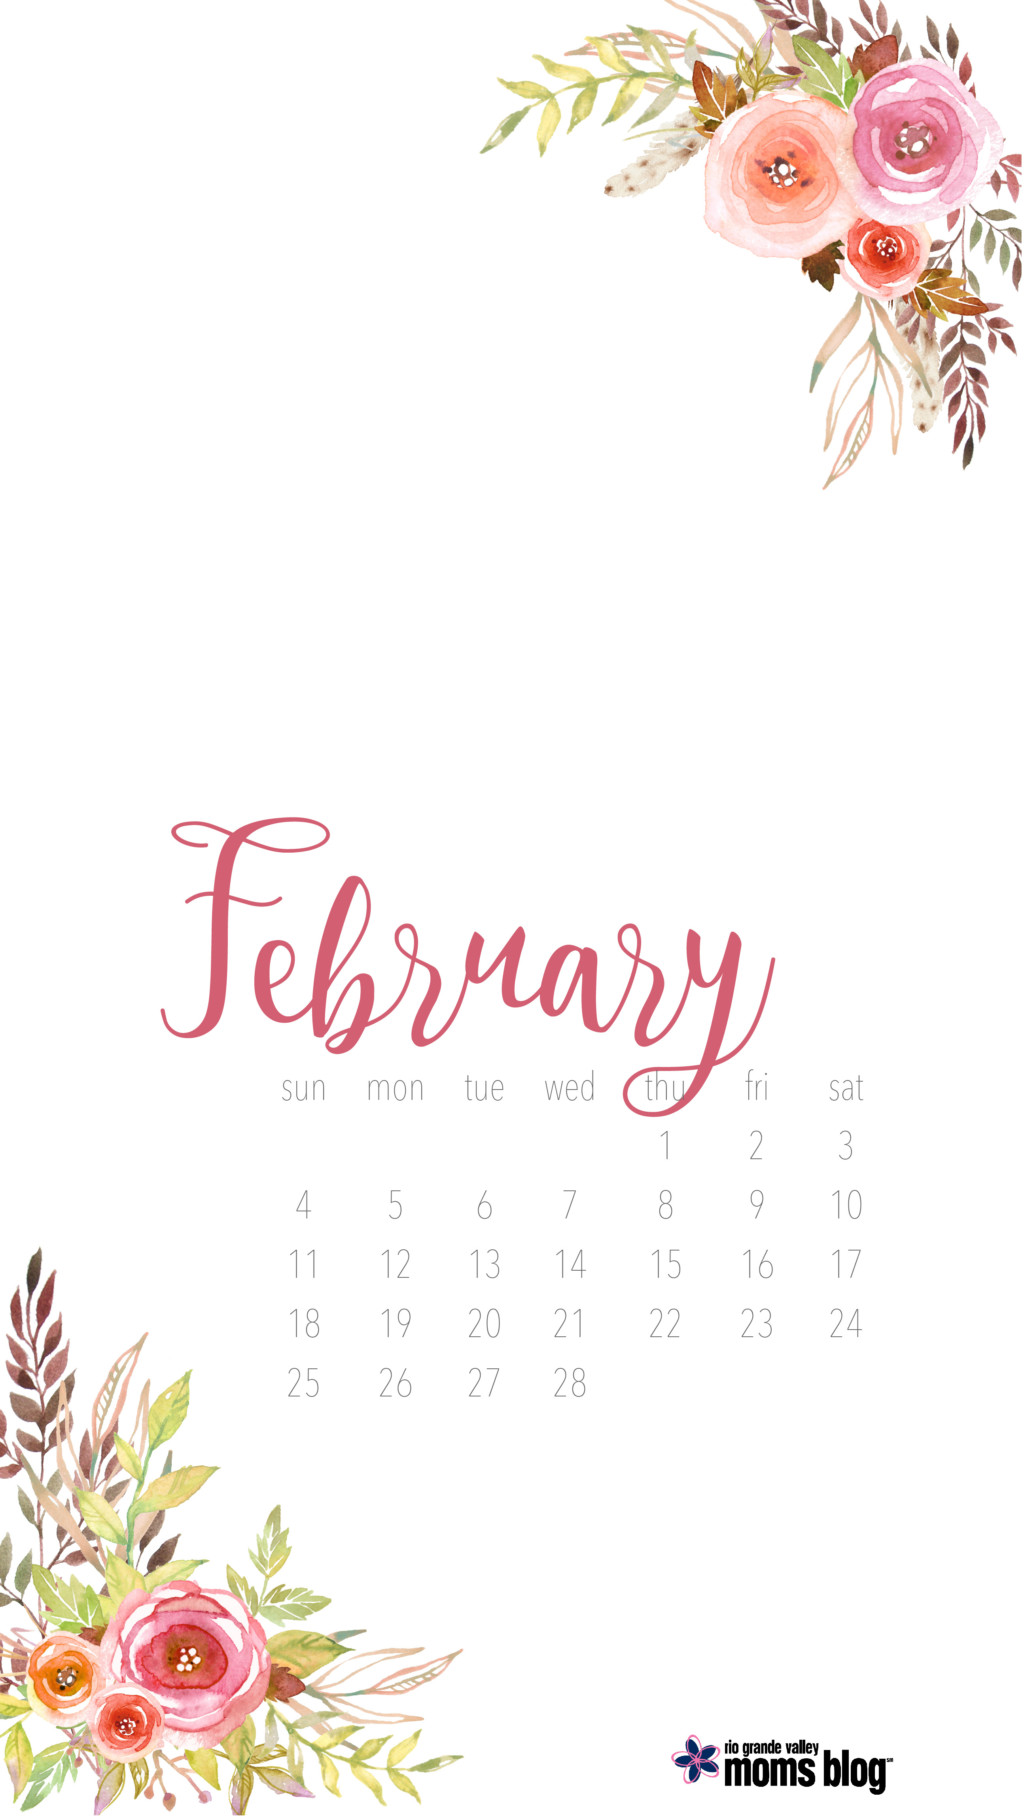 February Phone Calendar and Screensaver